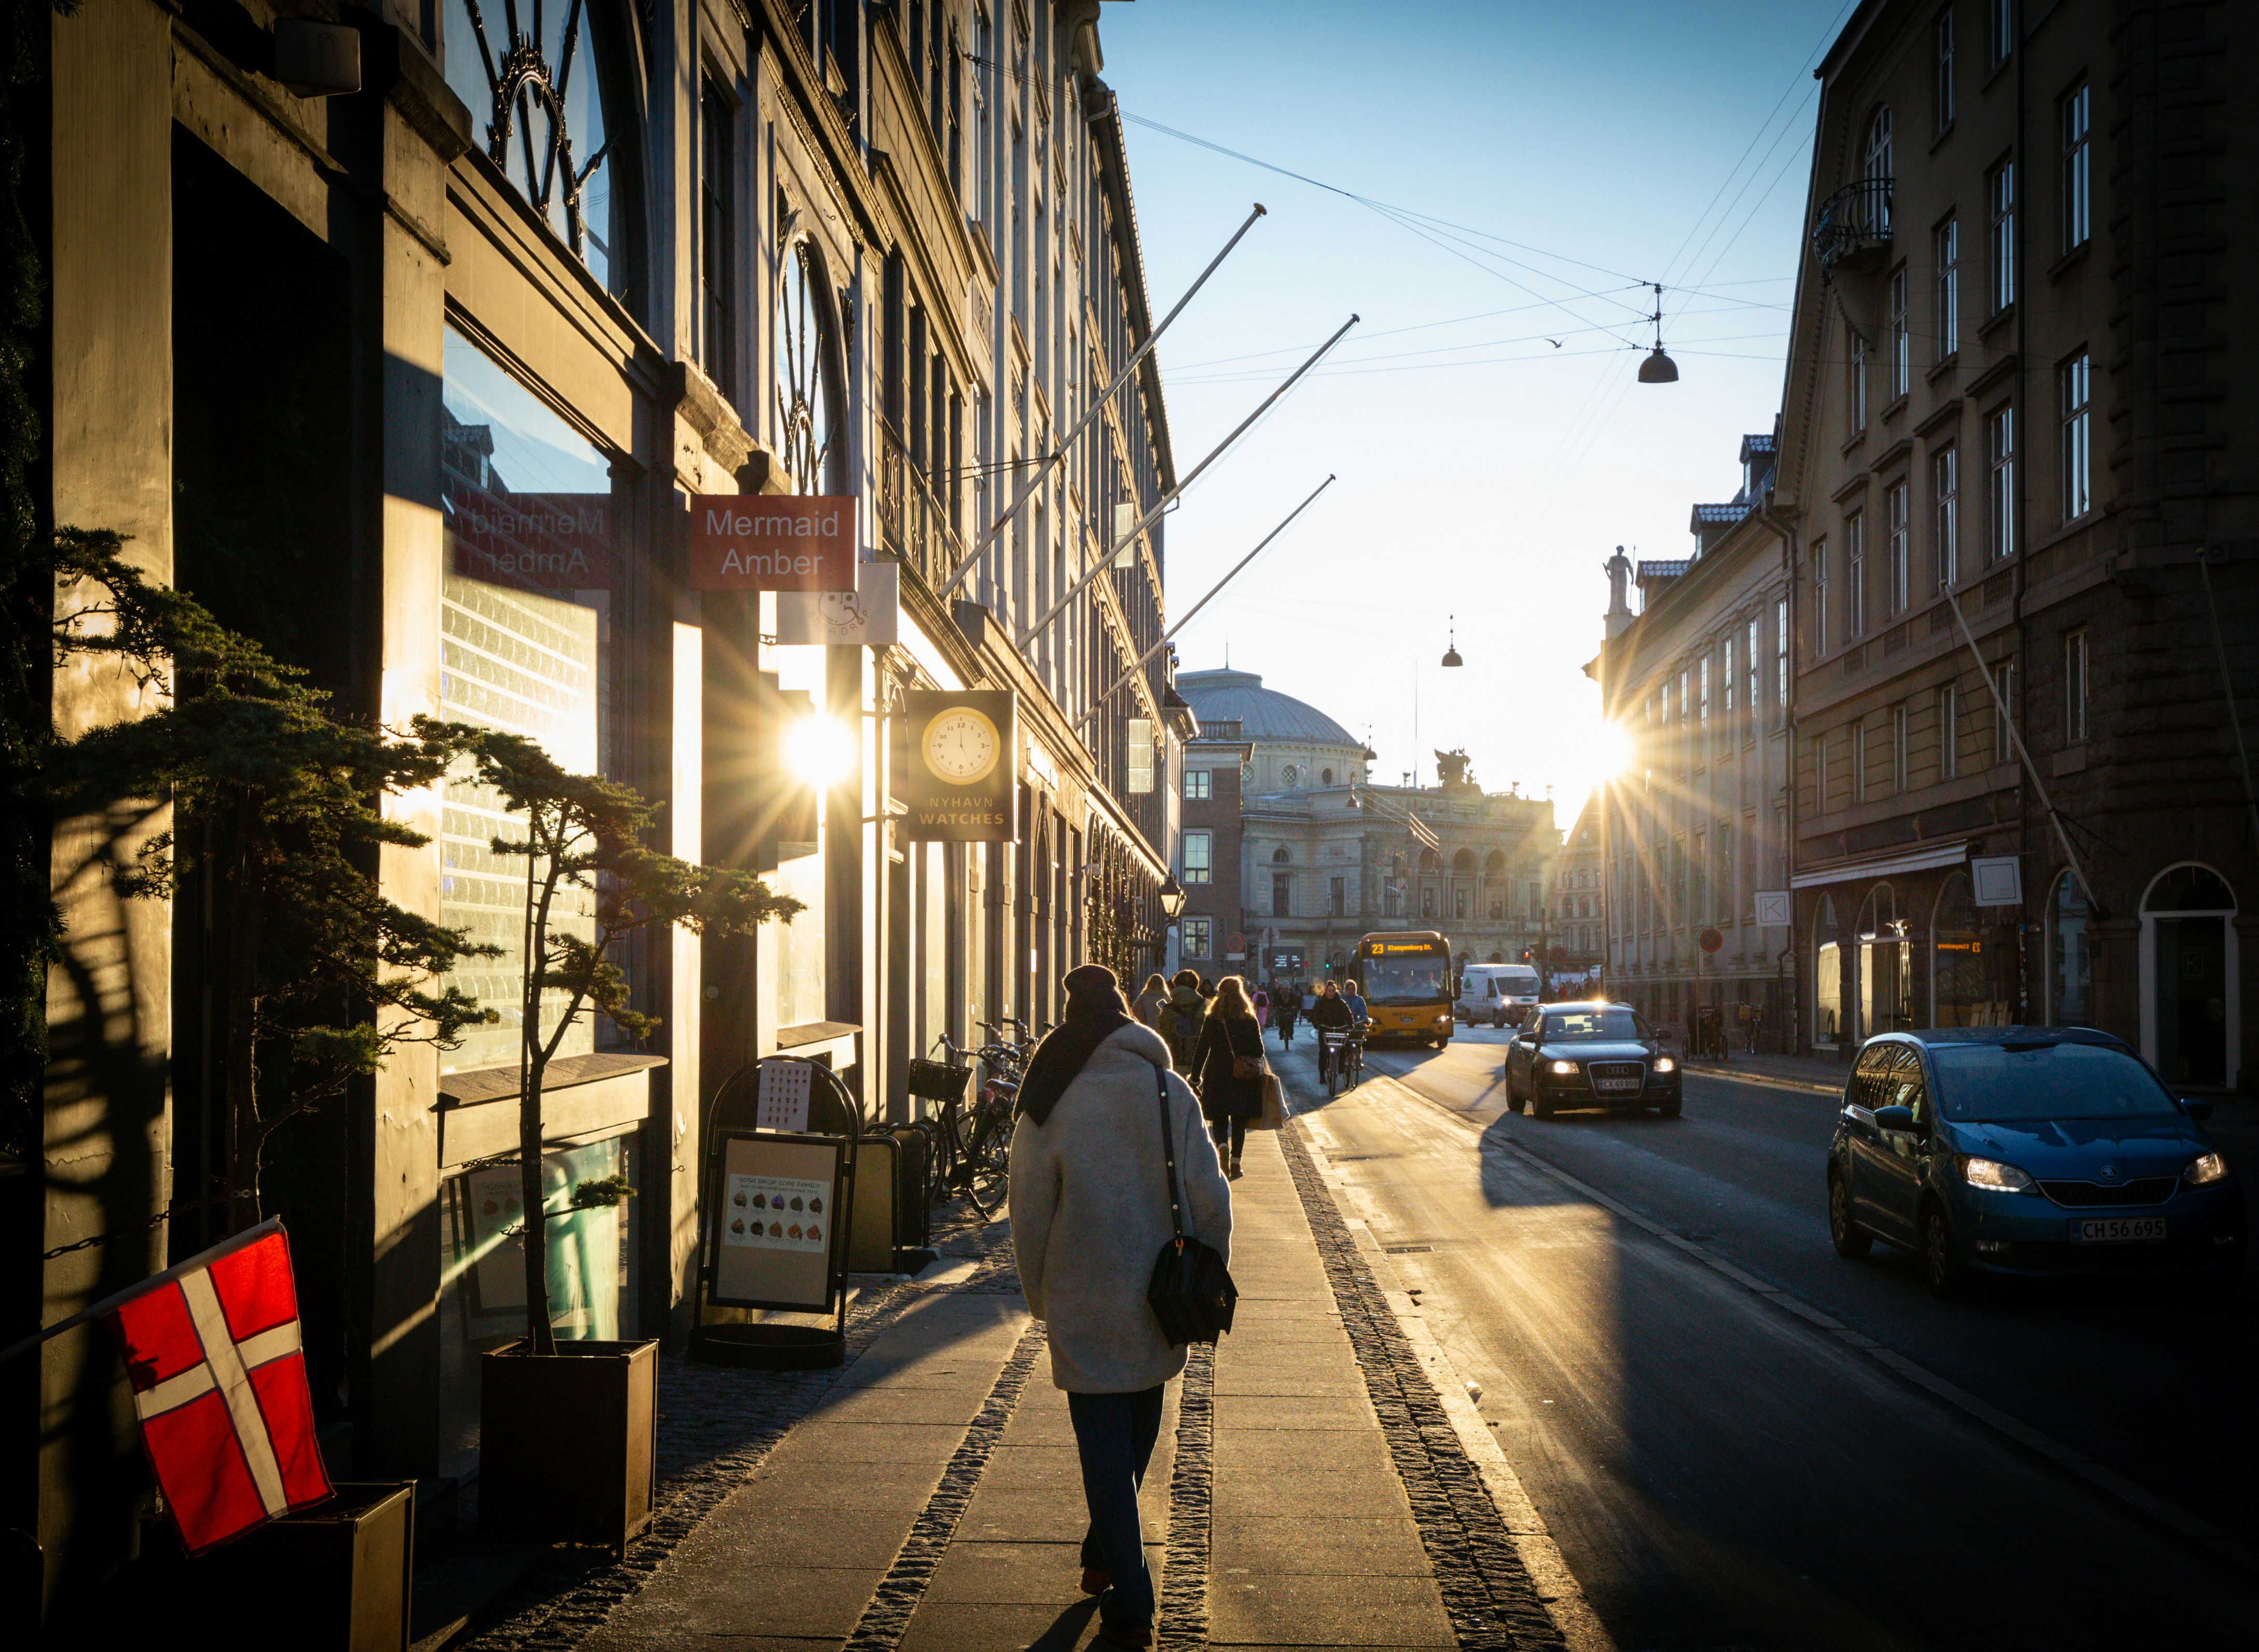 Passanten in Einkaufsstraße Kopenhagen Pedestrians going Shopping in Copenhagen